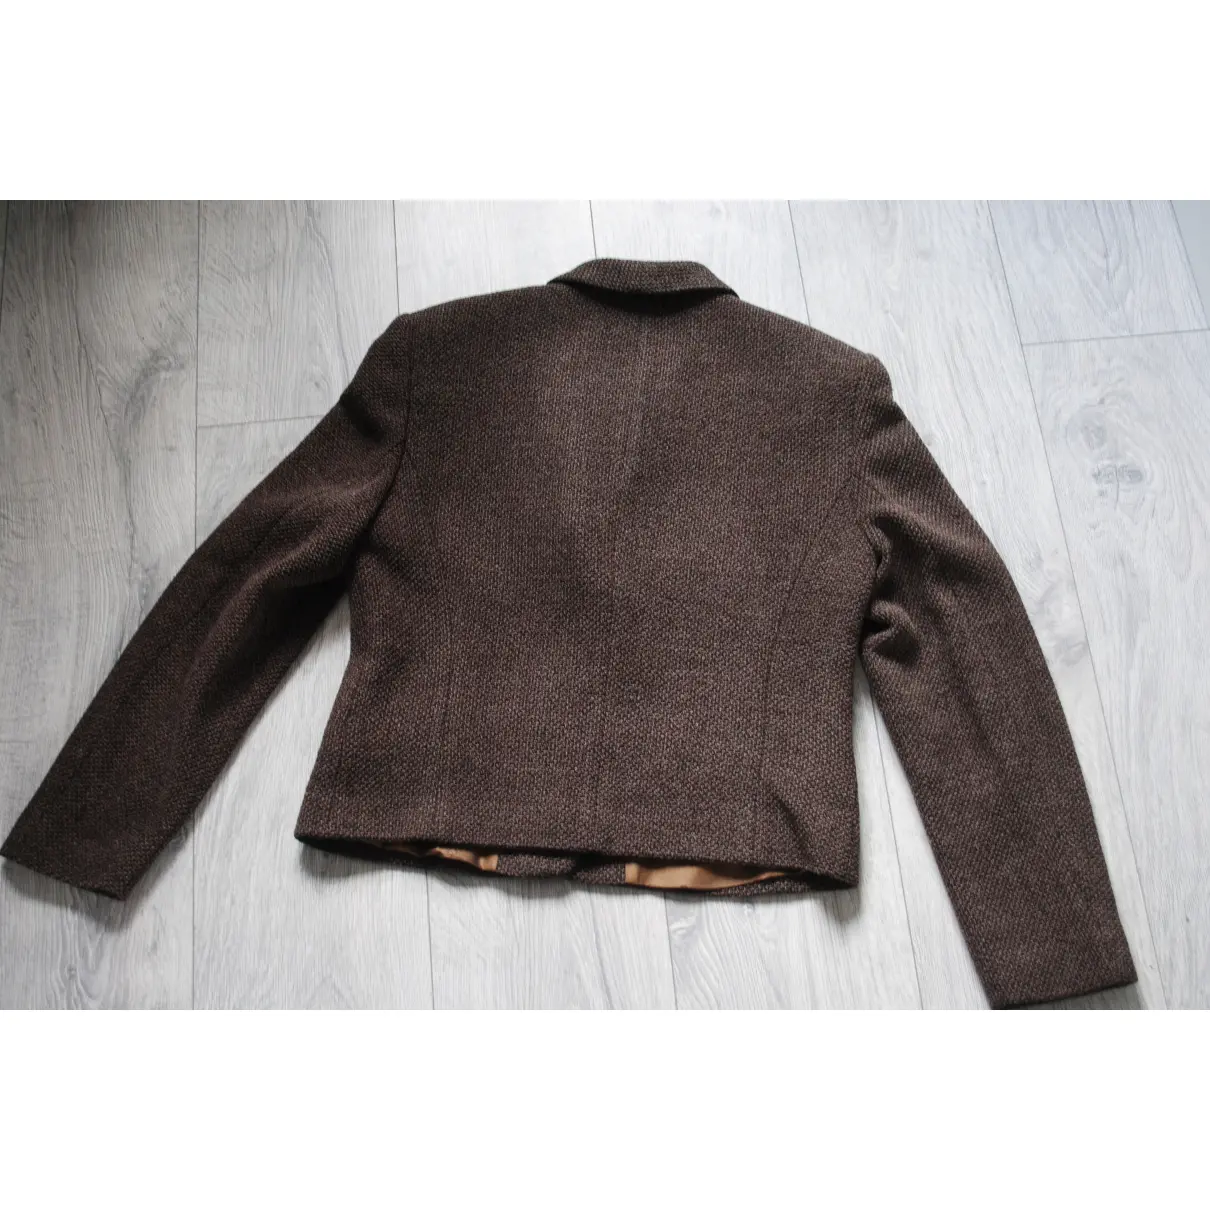 Buy Etienne Aigner Wool blazer online - Vintage